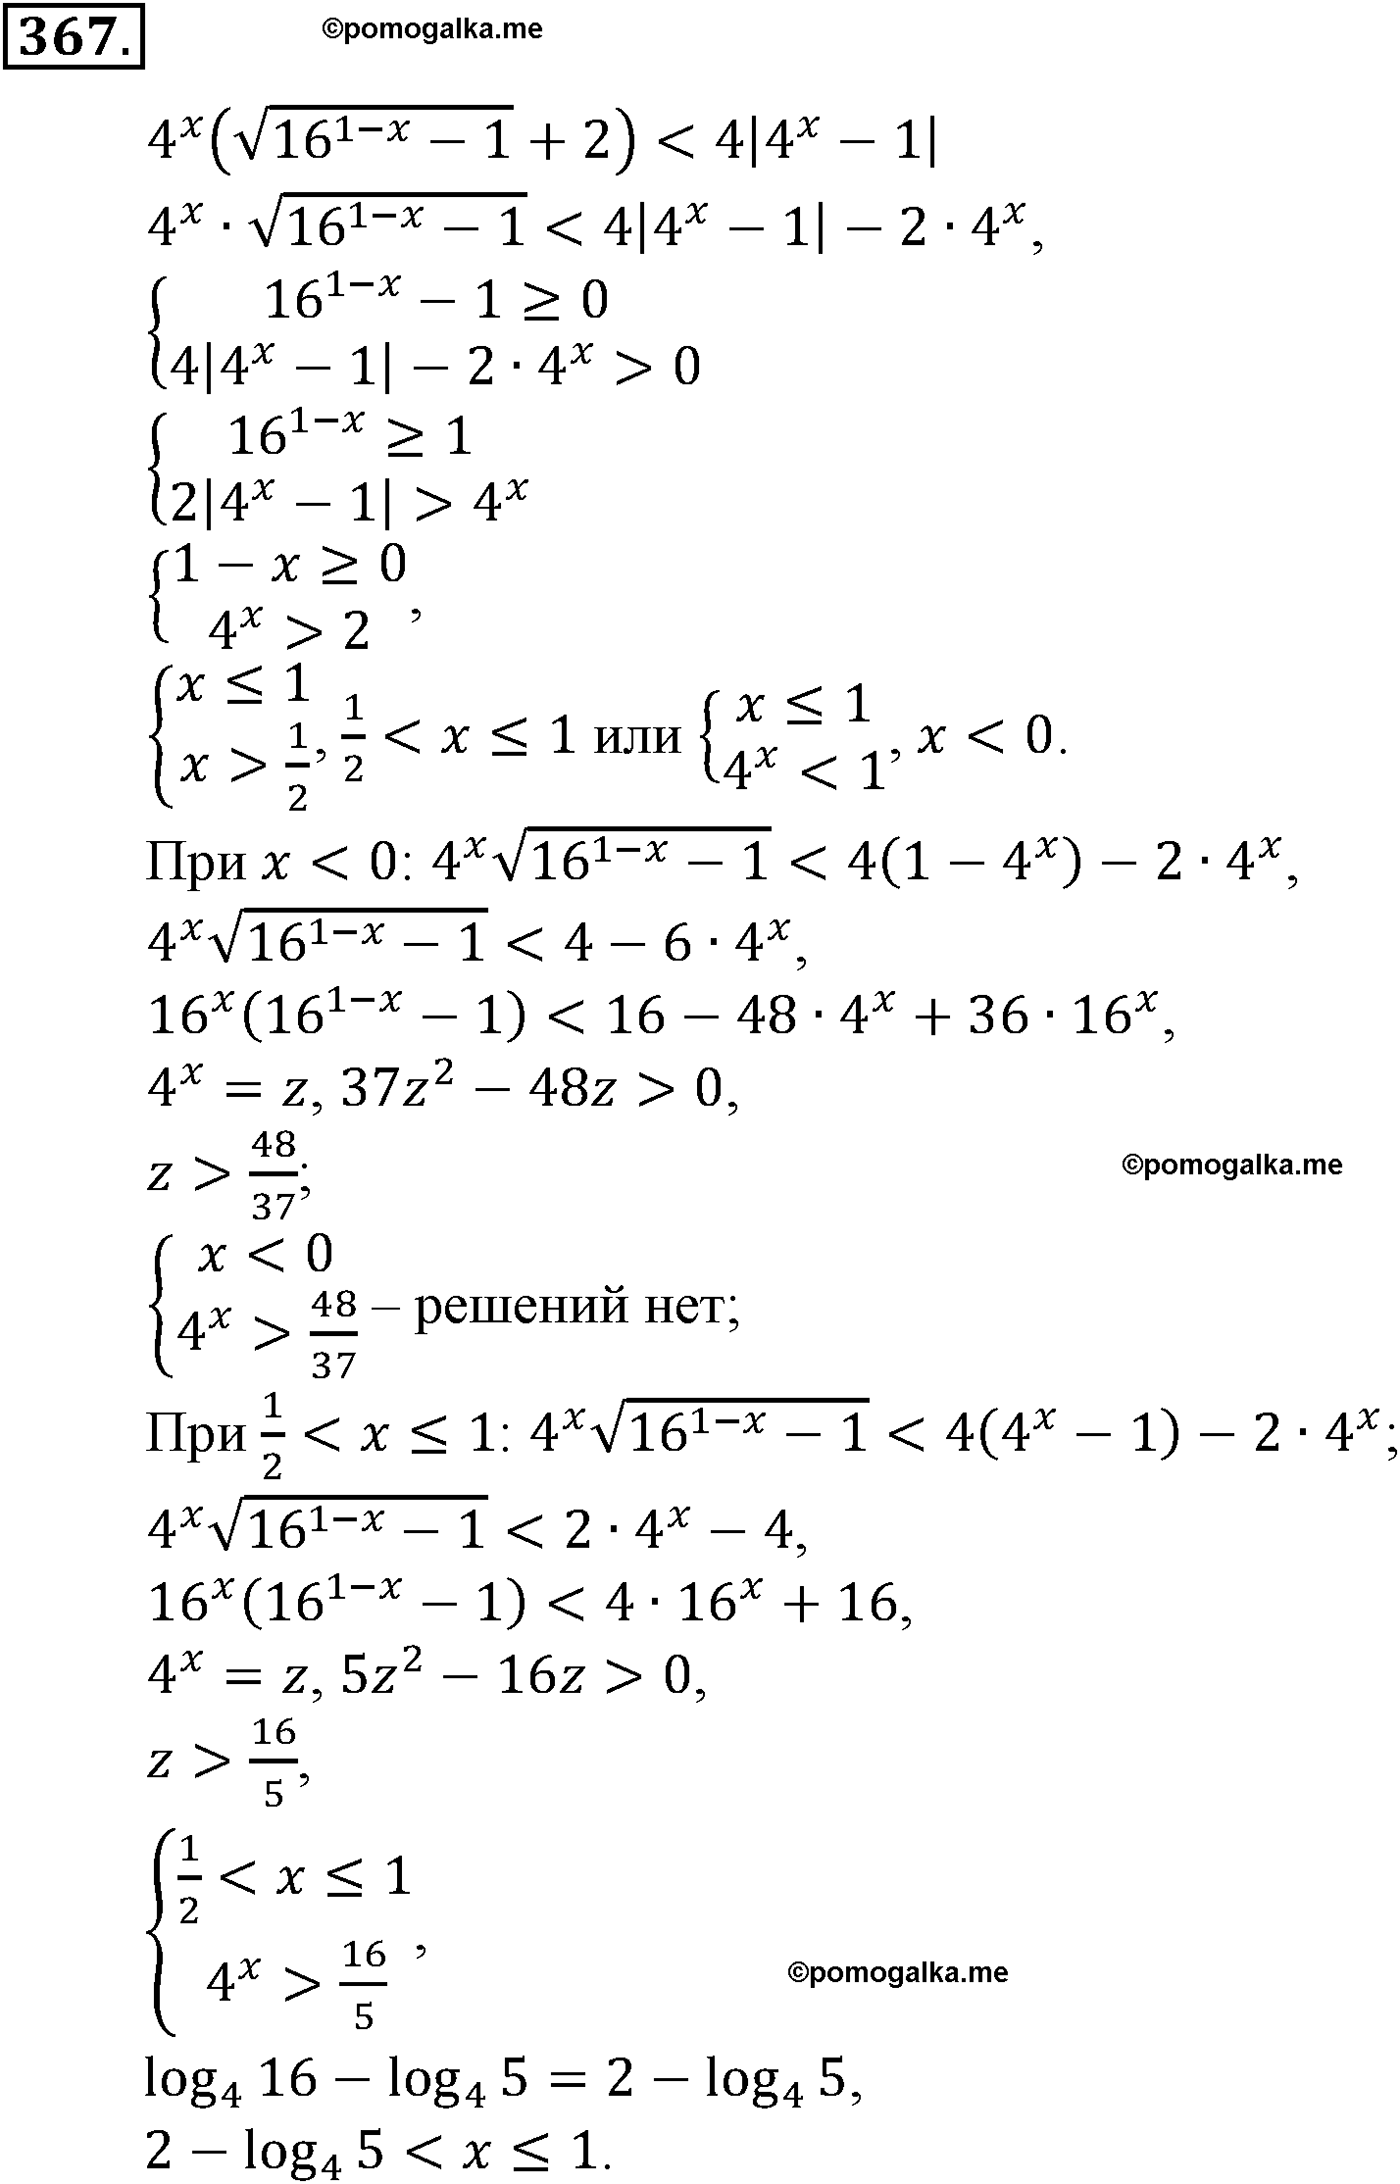 разбор задачи №367 по алгебре за 10-11 класс из учебника Алимова, Колягина